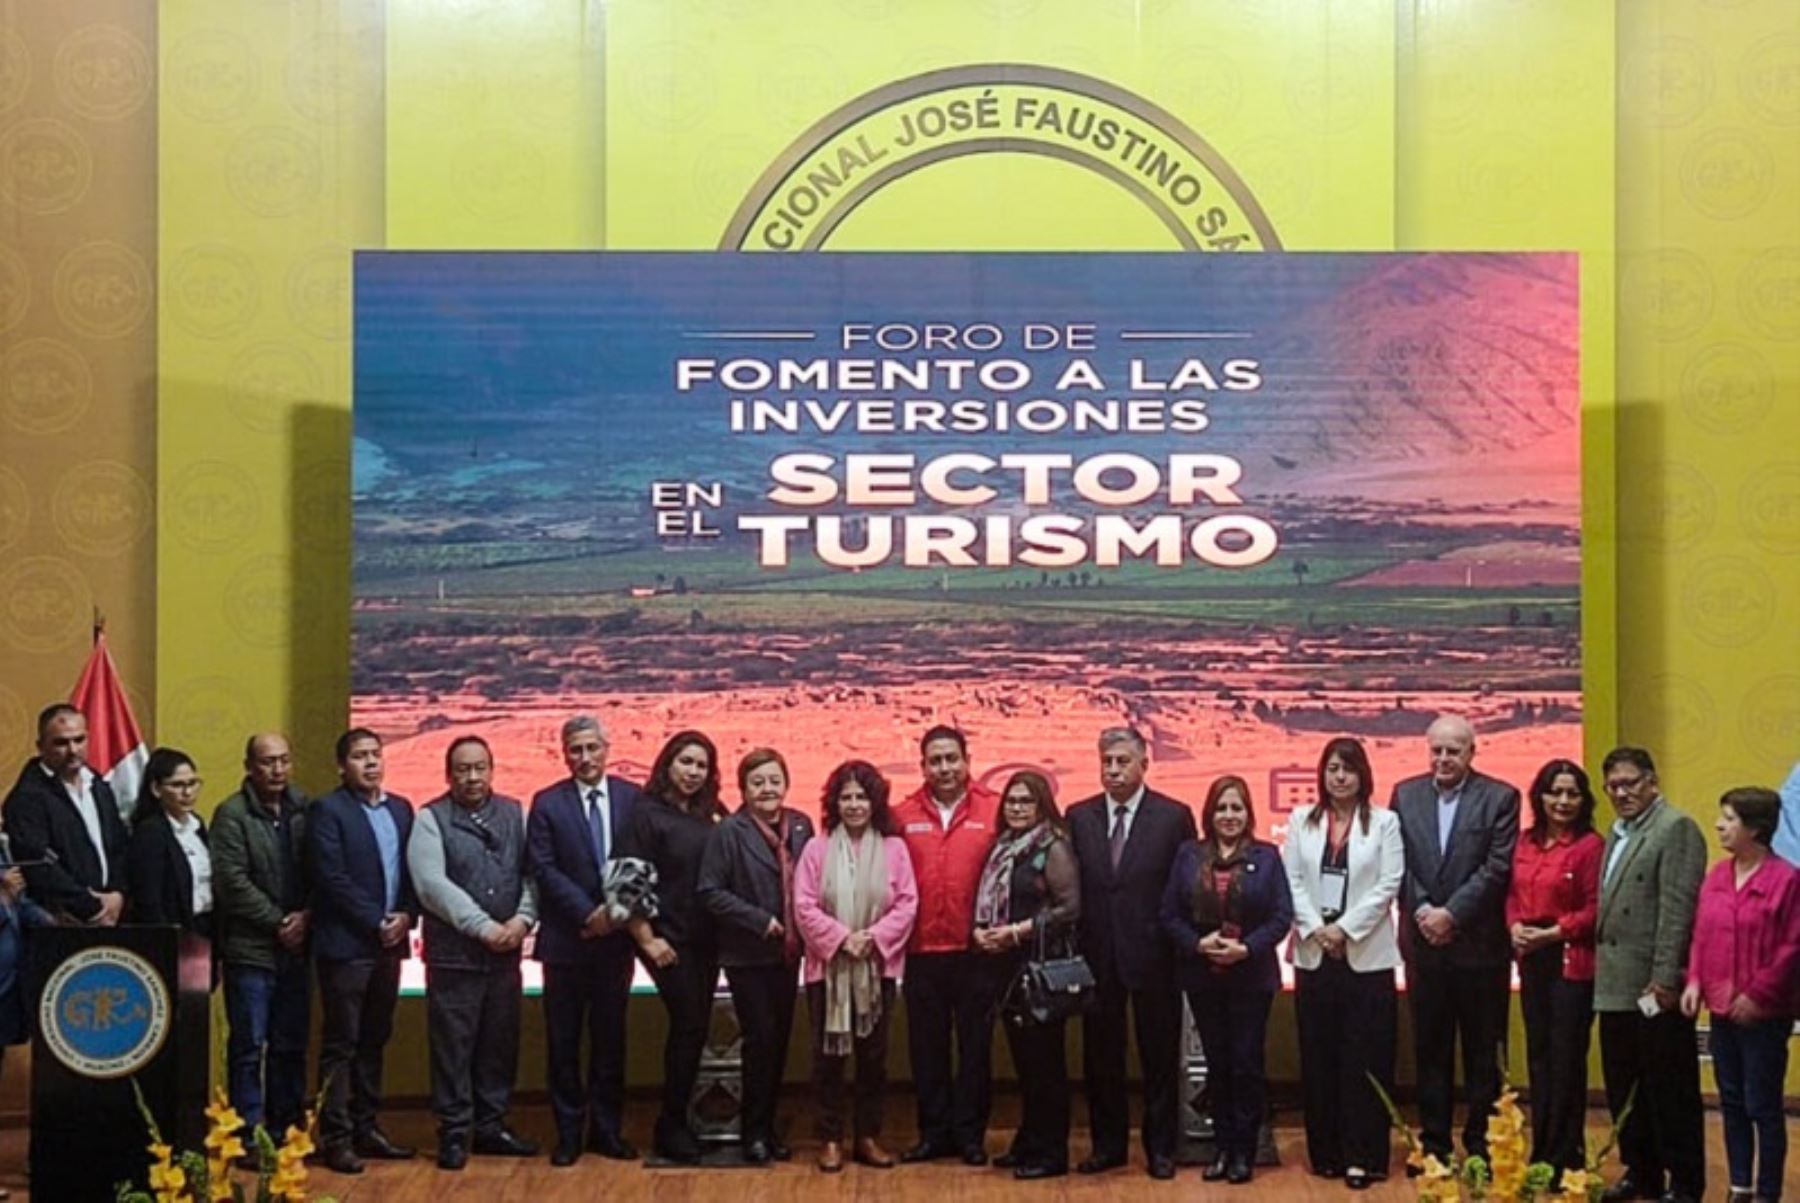 Viceministra de Turismo, Isabel Álvarez, participó en el “Foro de fomento a las inversiones privadas en el sector turismo región Lima Provincias”. Foto: Cortesía.